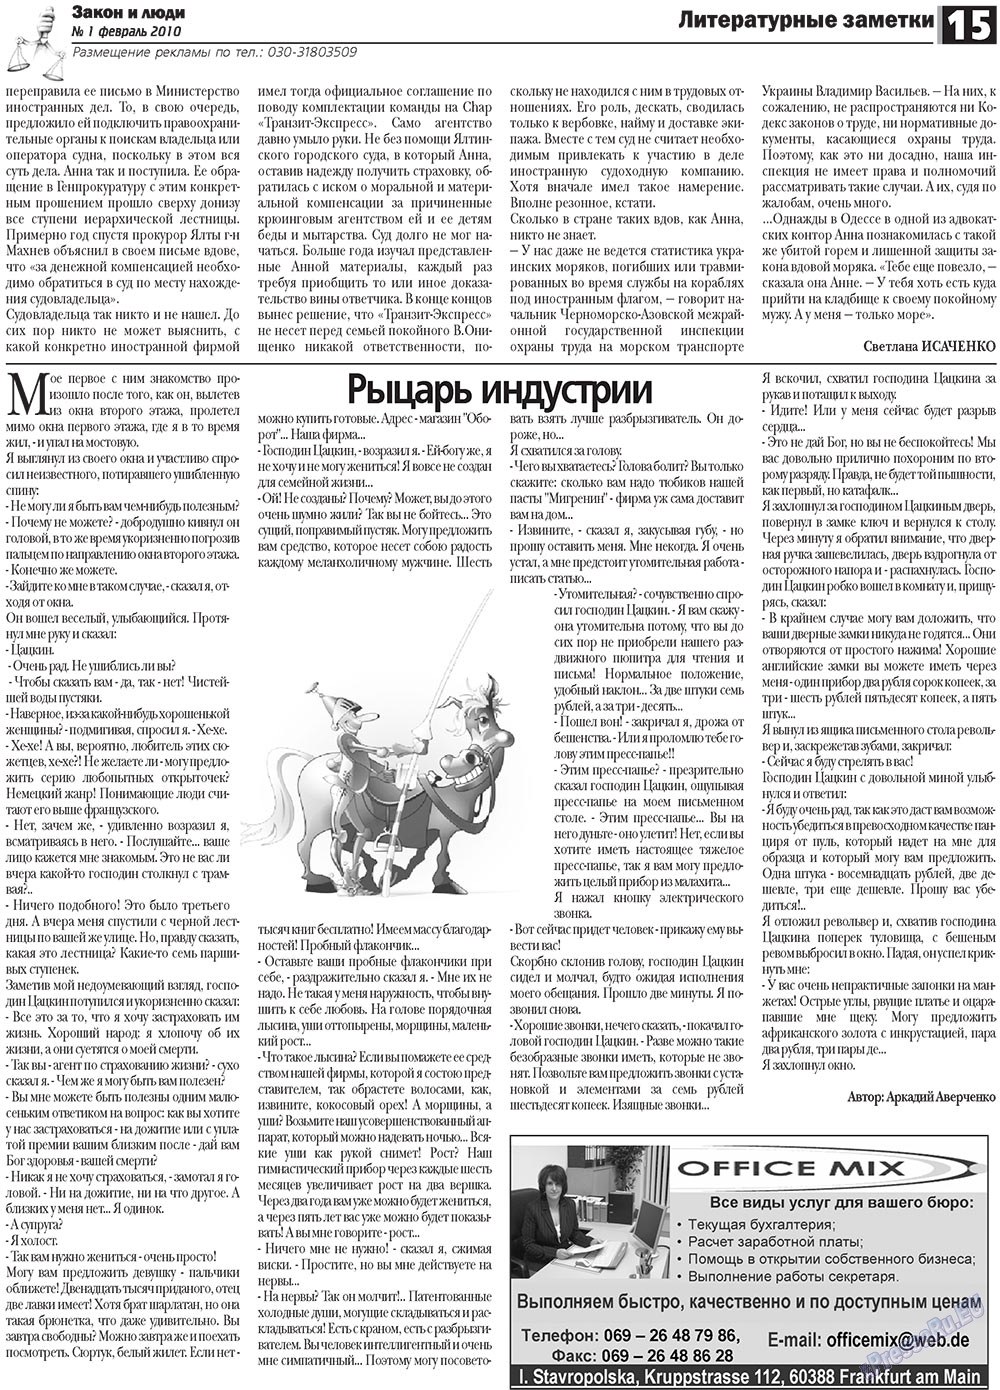 Закон и люди, газета. 2010 №1 стр.15